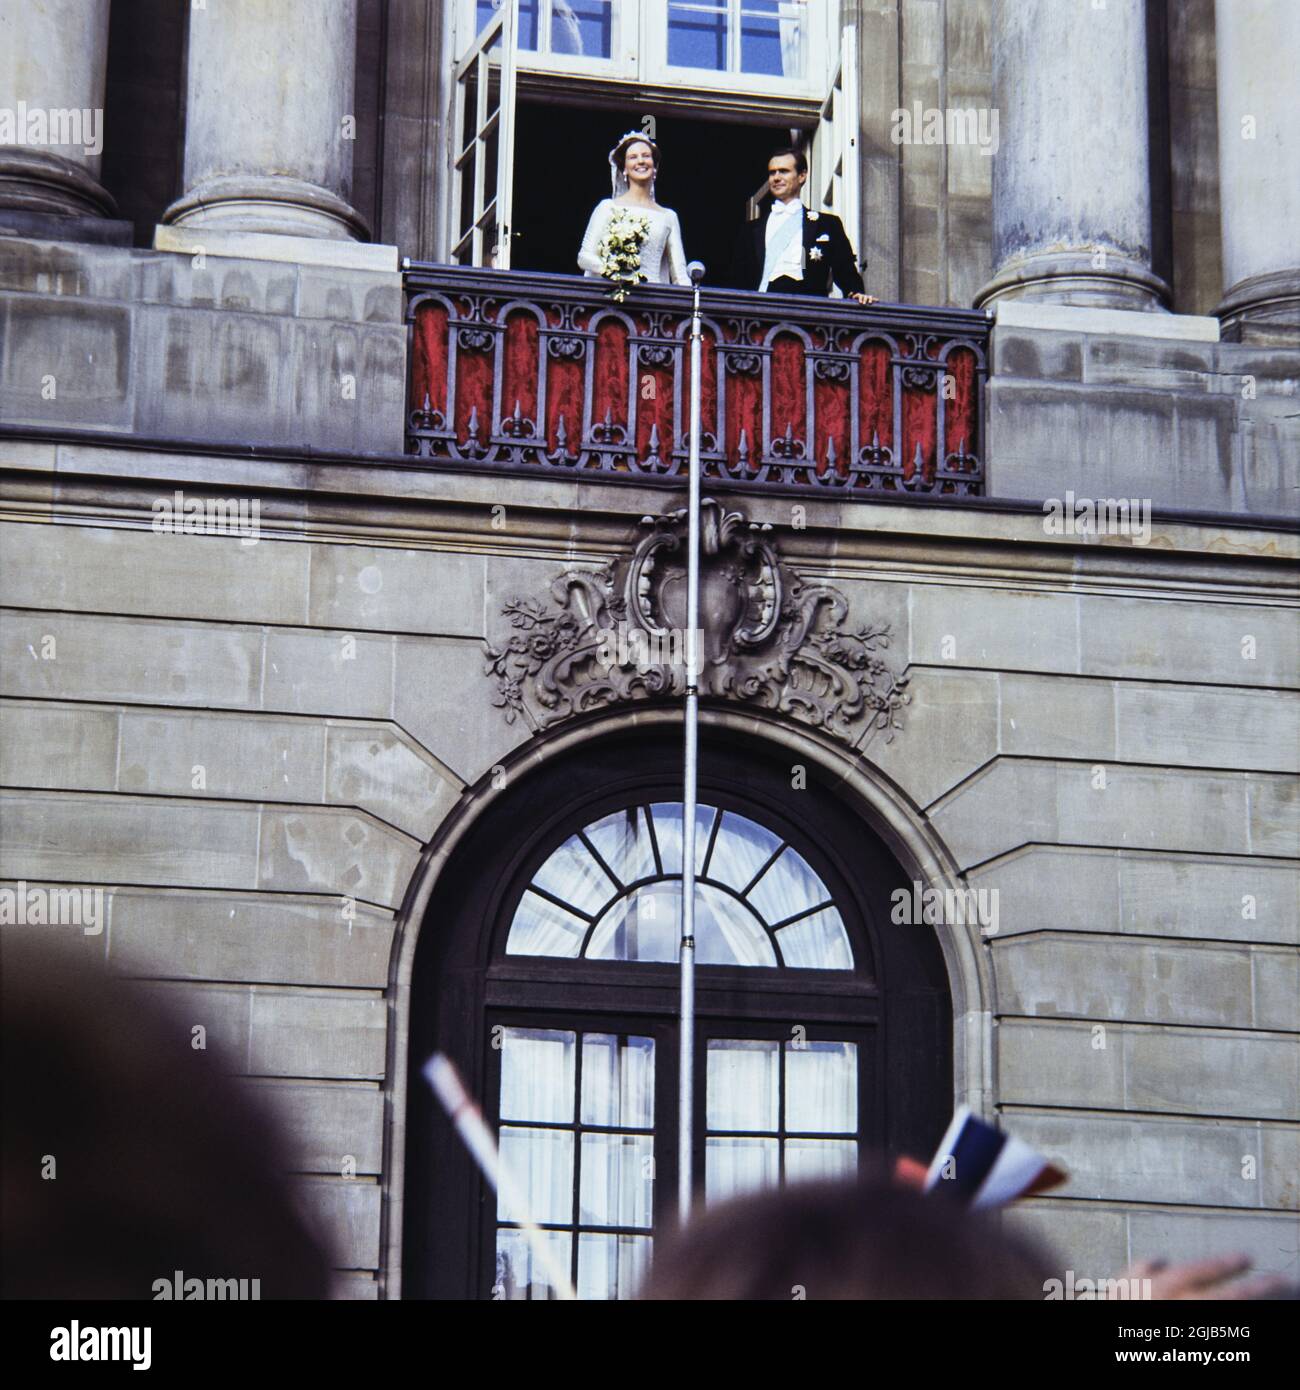 KÃ–PENHAMN 1967-06-10 le mariage de la reine Margrethe II du Danemark et du prince henrik Henrik au palais Amalienborg Foto: Christer Kindahl / Kamerabild / TT / Kod: 3019 Banque D'Images